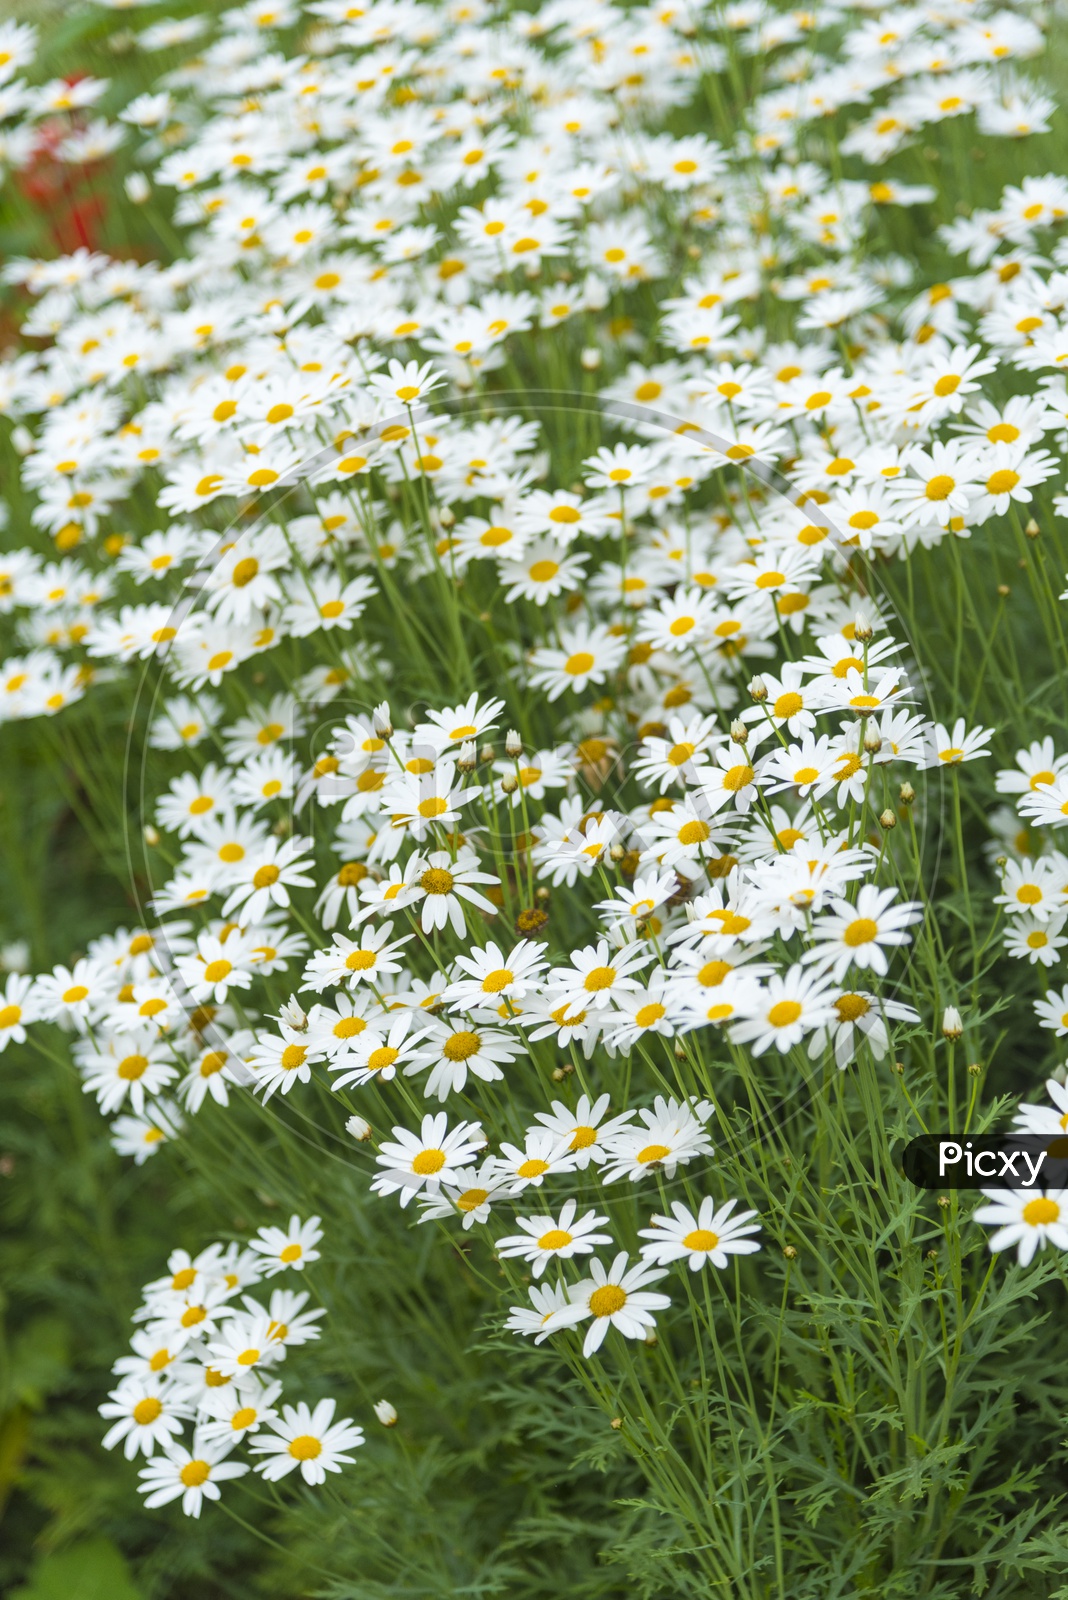 Beautiful Daisy Flowers in a Garden